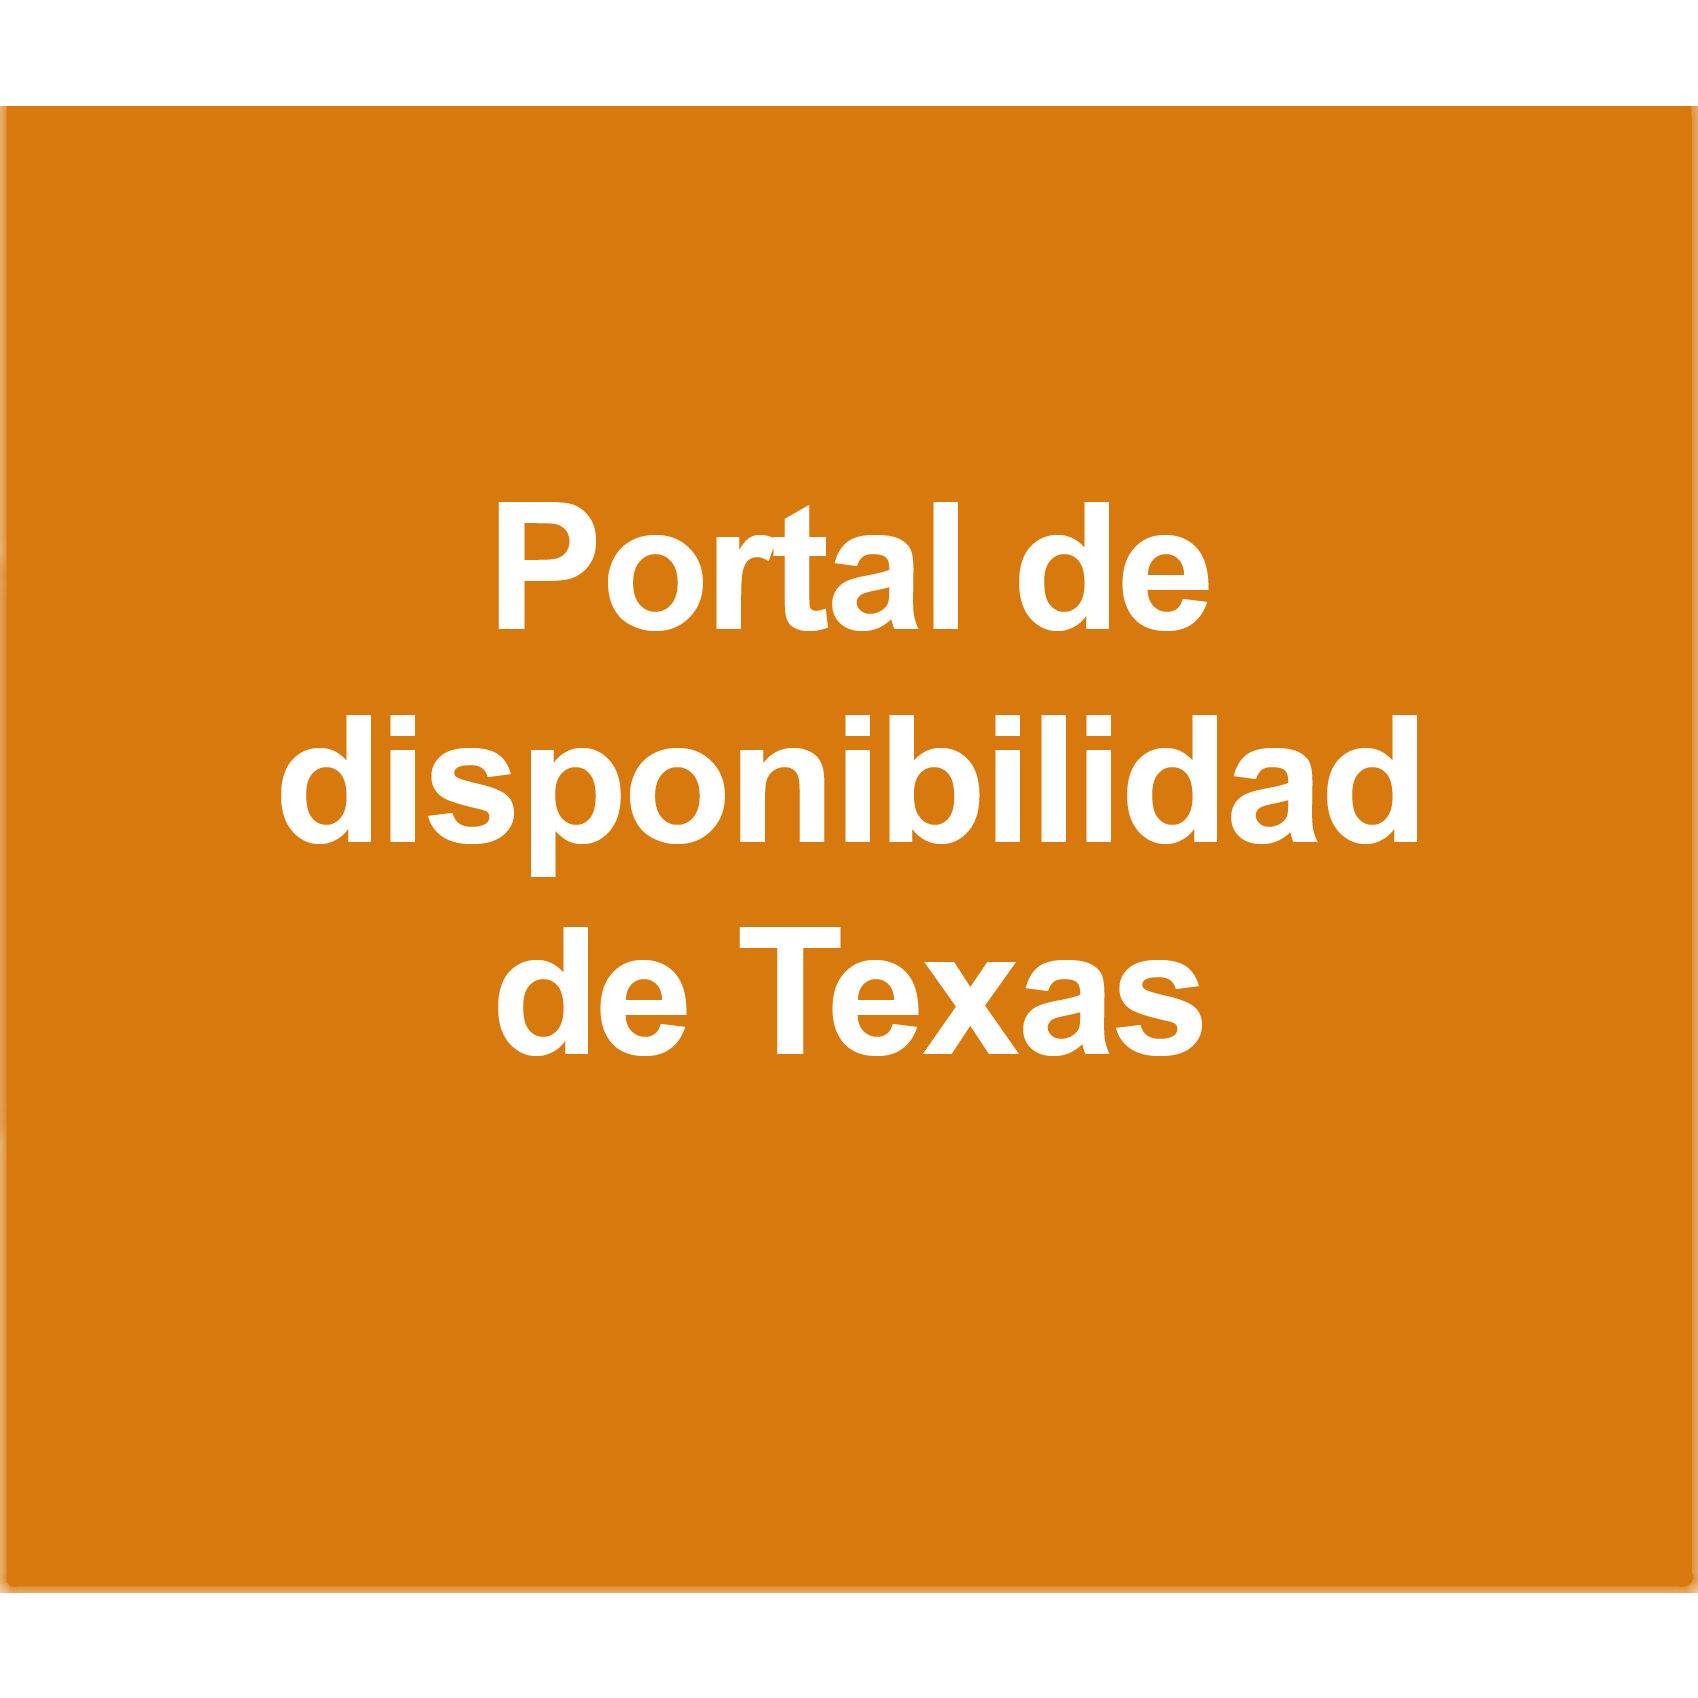 Portal de disponibilidad de Texas